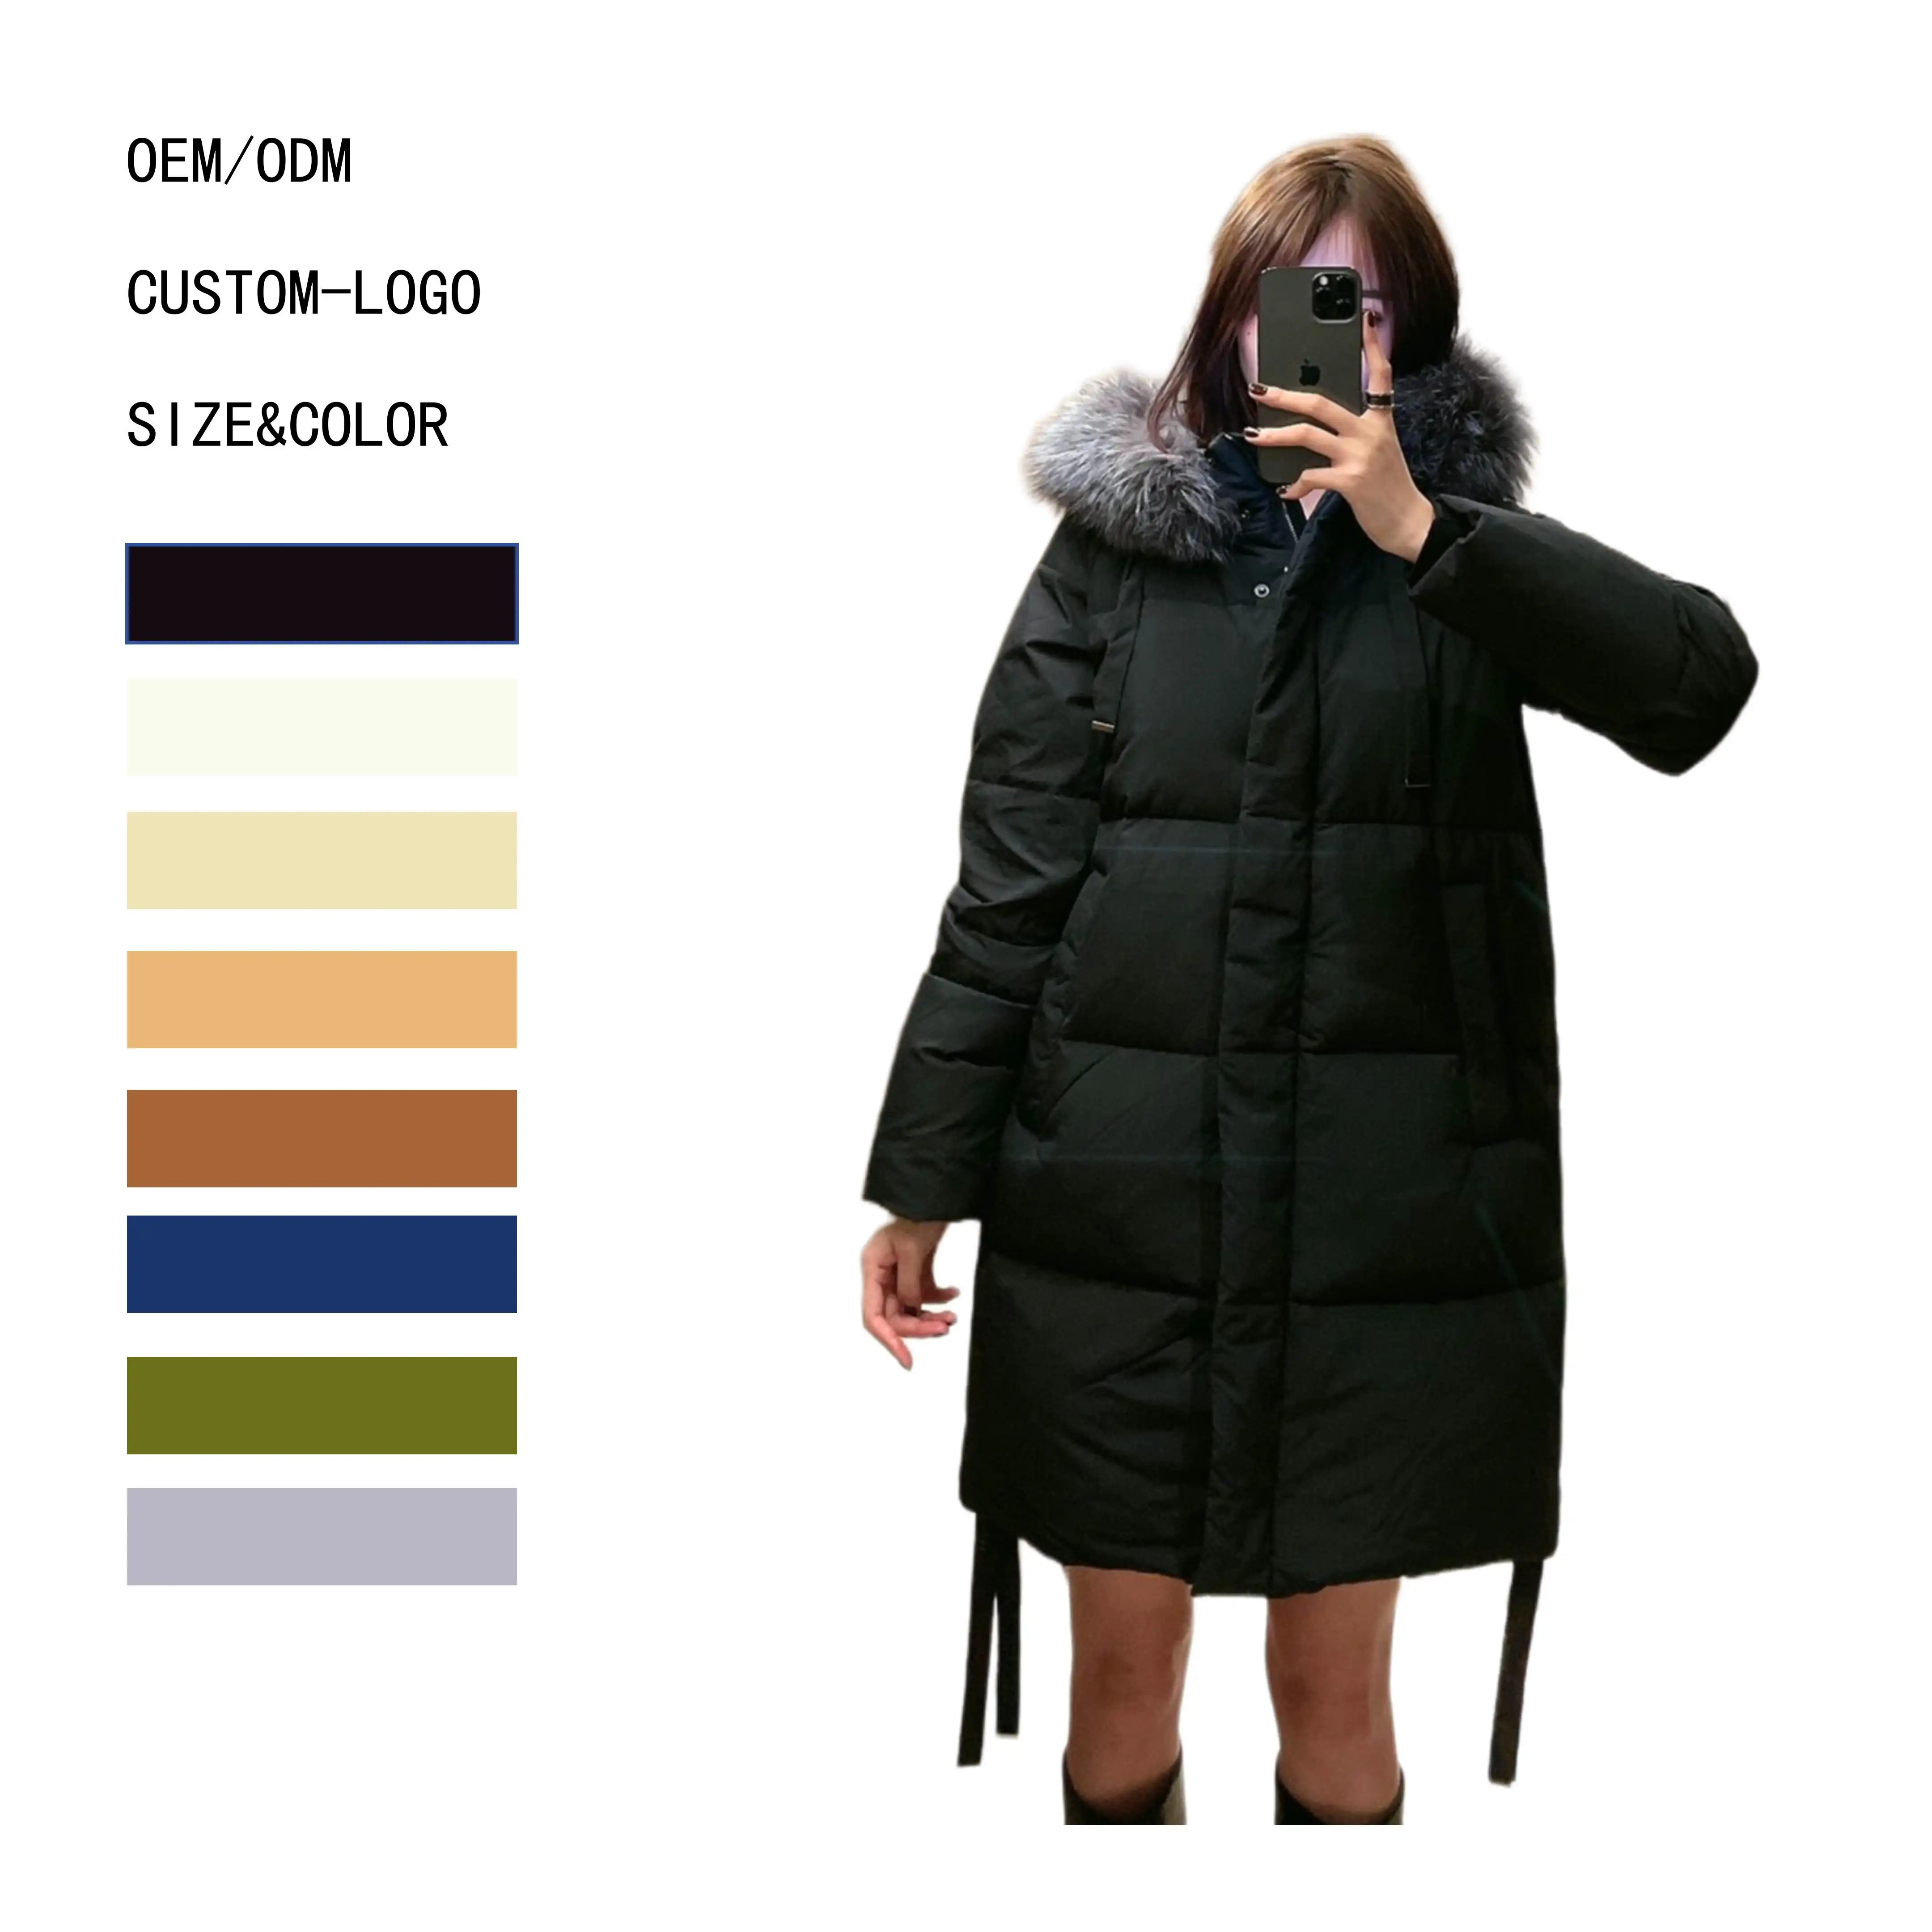 Casaco longo de inverno para mulheres, casaco preto com gola de pele de raposa preta, com zíper, impermeável e aquecedor, item em grande venda online